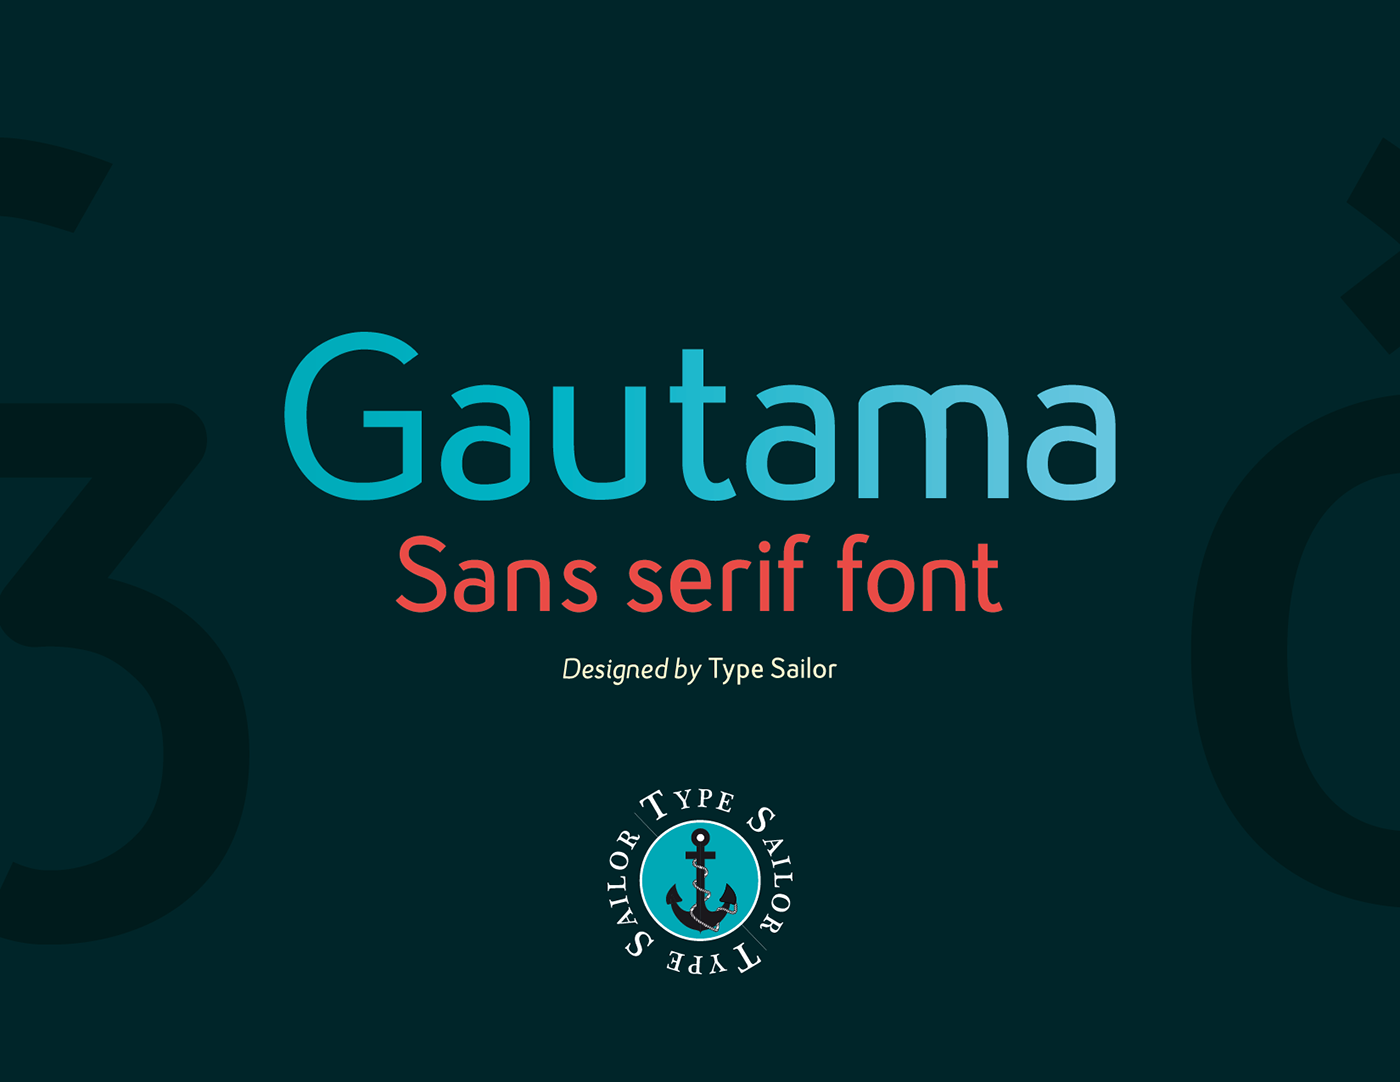 type design font font design Gautama sans serif Type Sailor